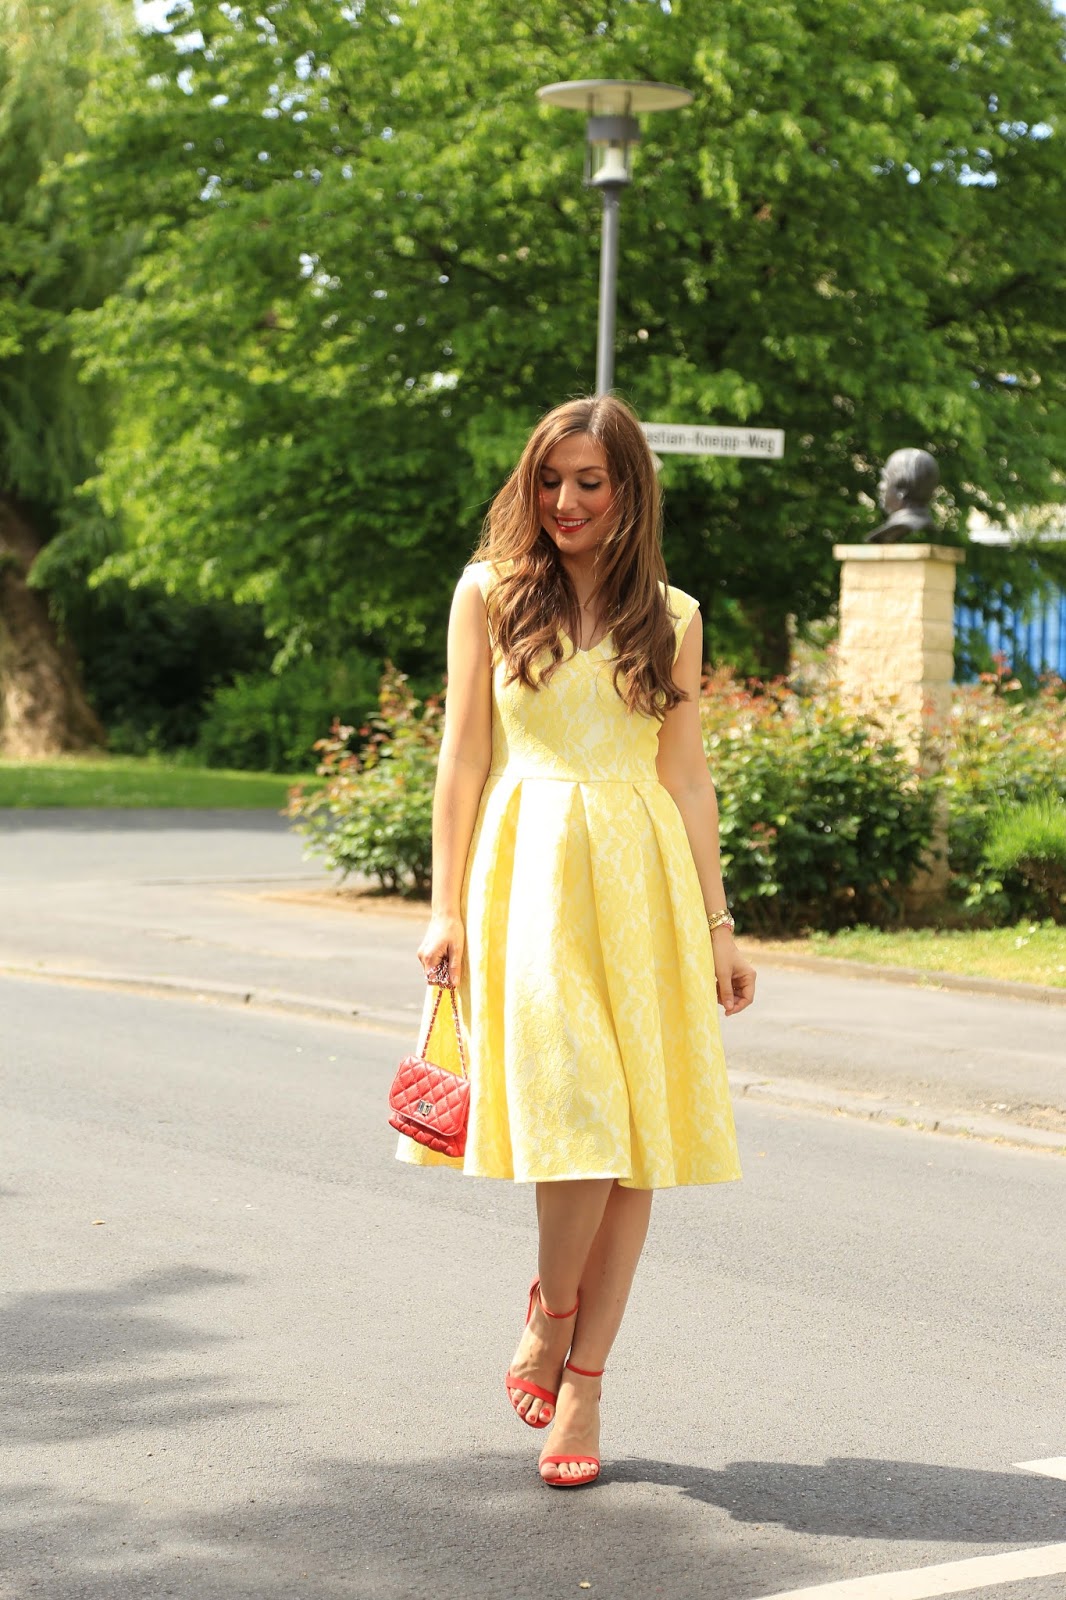 Wie trage ich ein gelbes Kleid - Lichi.de Kleid - Wie kombiniere ich rote Schuhe - Blogger mit roten Schuhen - Blogger in gelben Kleid 